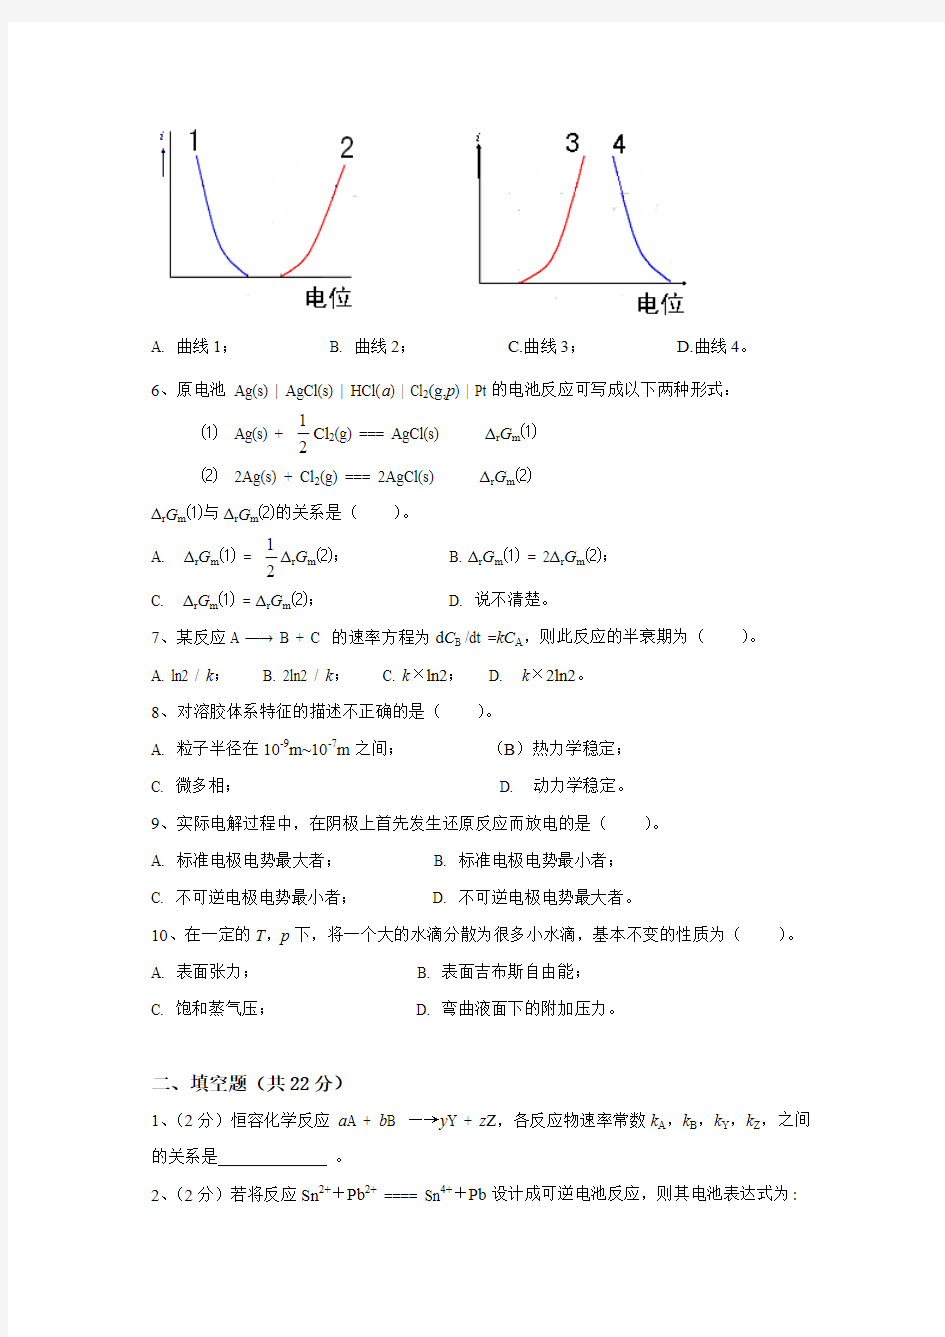 中南大学物理化学考试试卷-2013剖析